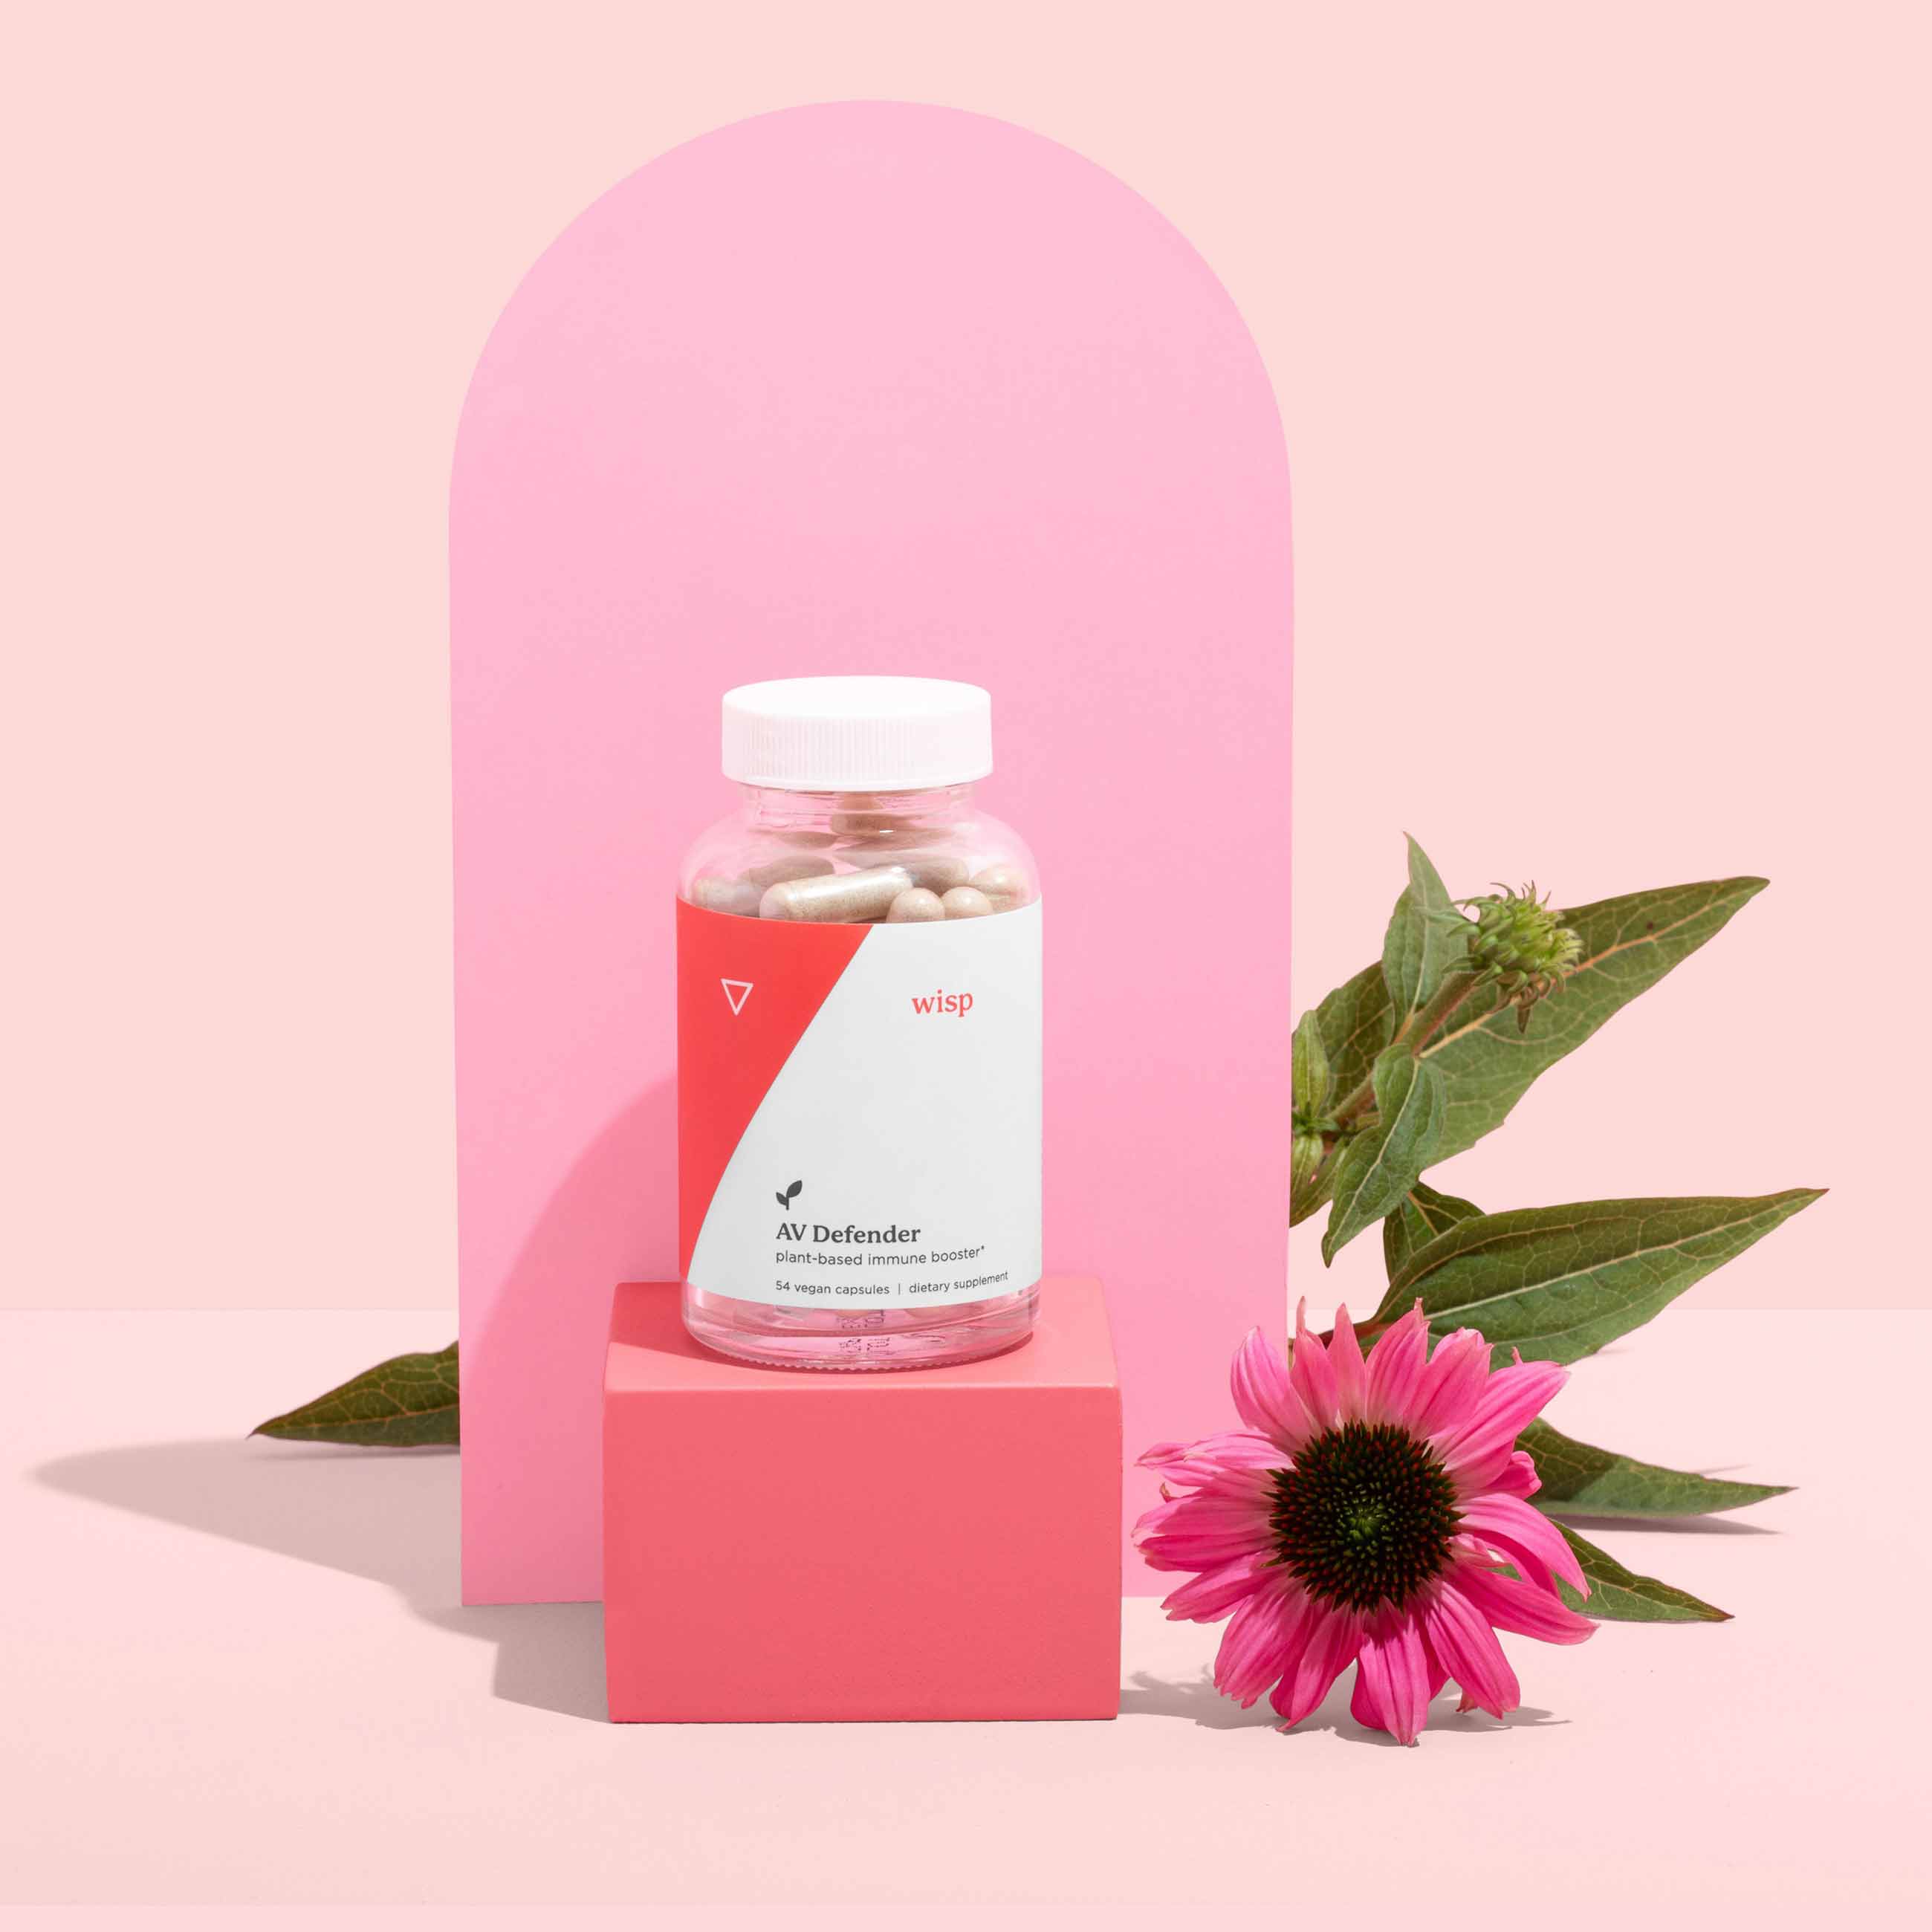 Bottle of AV Defender and florals on a pink background